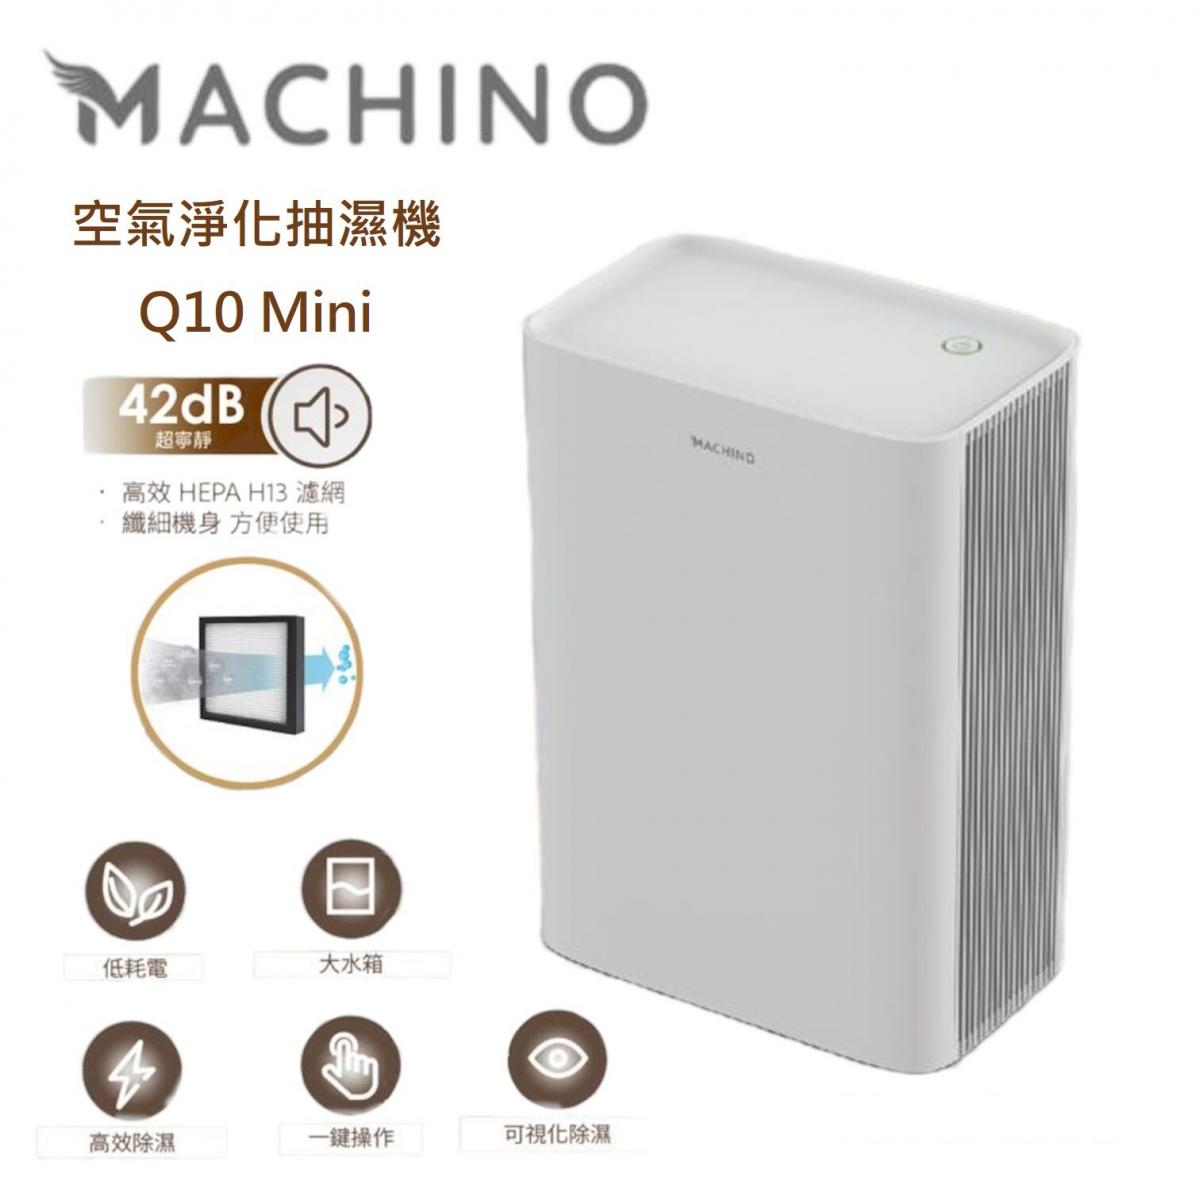 Machino - Q10 Mini Air Purifying Dehumidifier